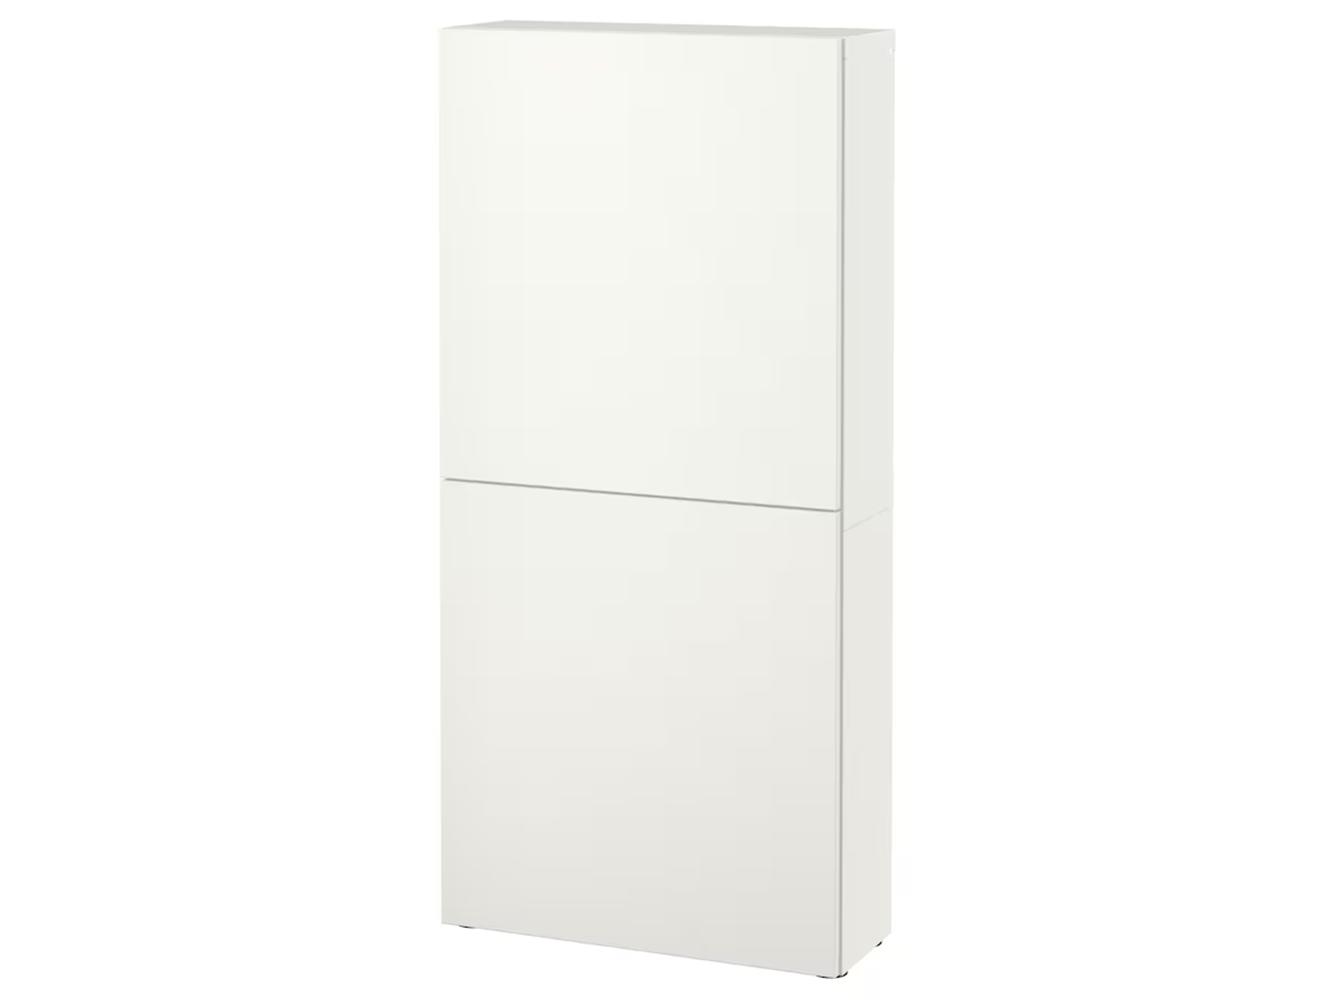 Навесной шкаф Беста 513 white ИКЕА (IKEA) изображение товара